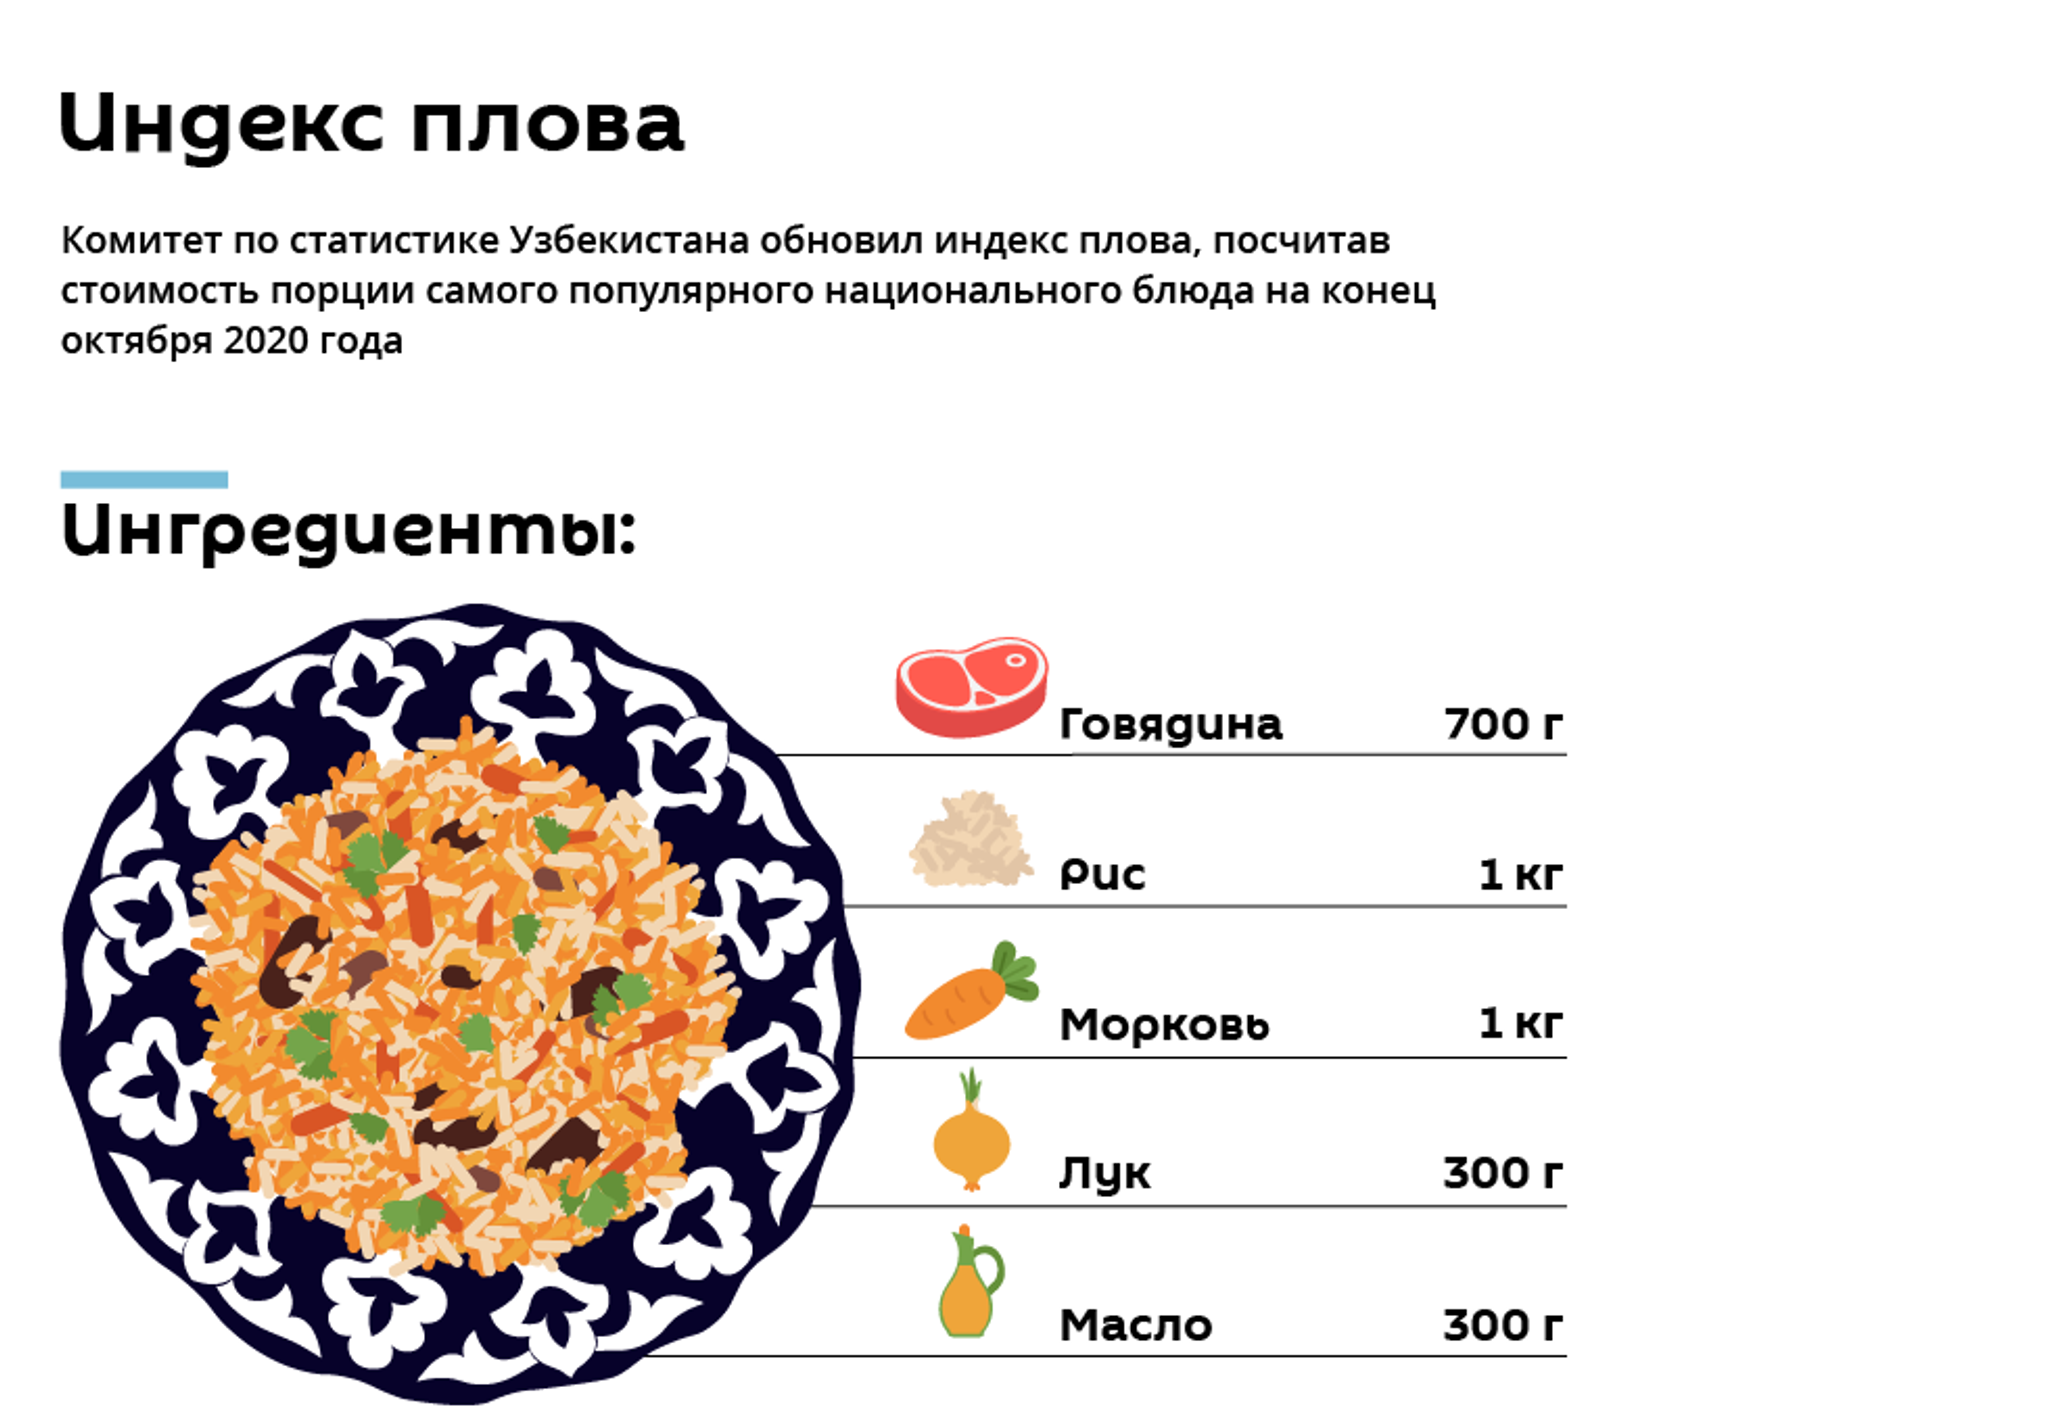 Сколько масла на кг плова. Плов порция в граммах. Себестоимость 1 кг плова. Индекс плова в Узбекистане. Порция плова на 1 человека.